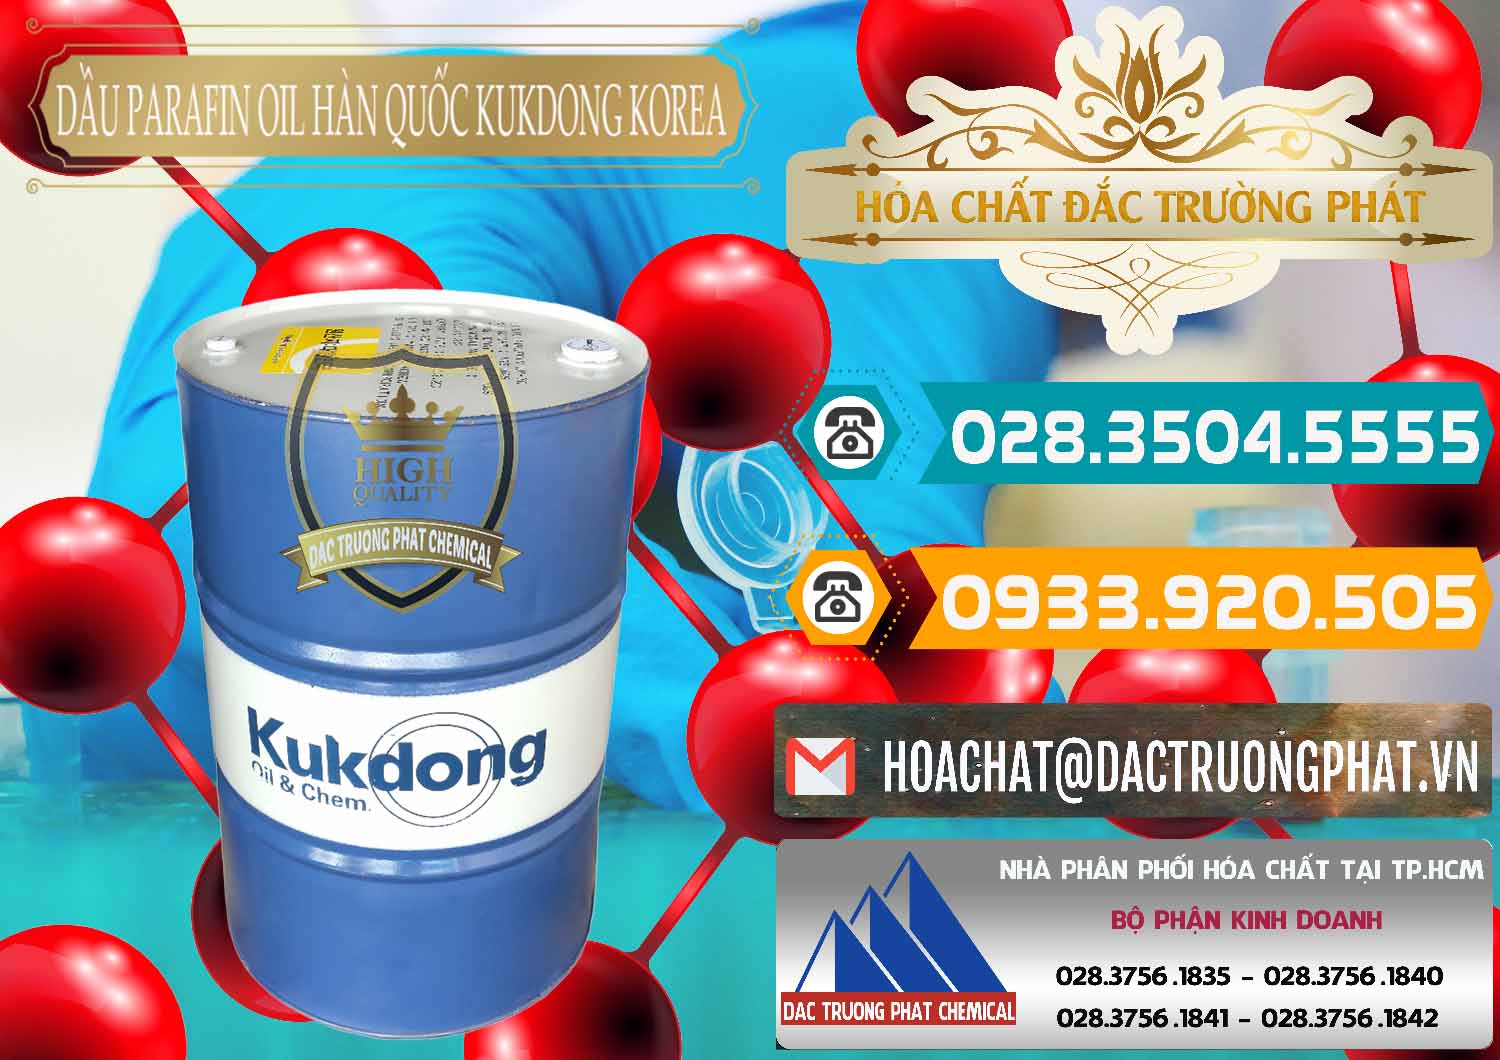 Cty chuyên bán _ cung cấp Dầu Parafin Oil Hàn Quốc Korea Kukdong - 0060 - Nhà phân phối & nhập khẩu hóa chất tại TP.HCM - congtyhoachat.vn